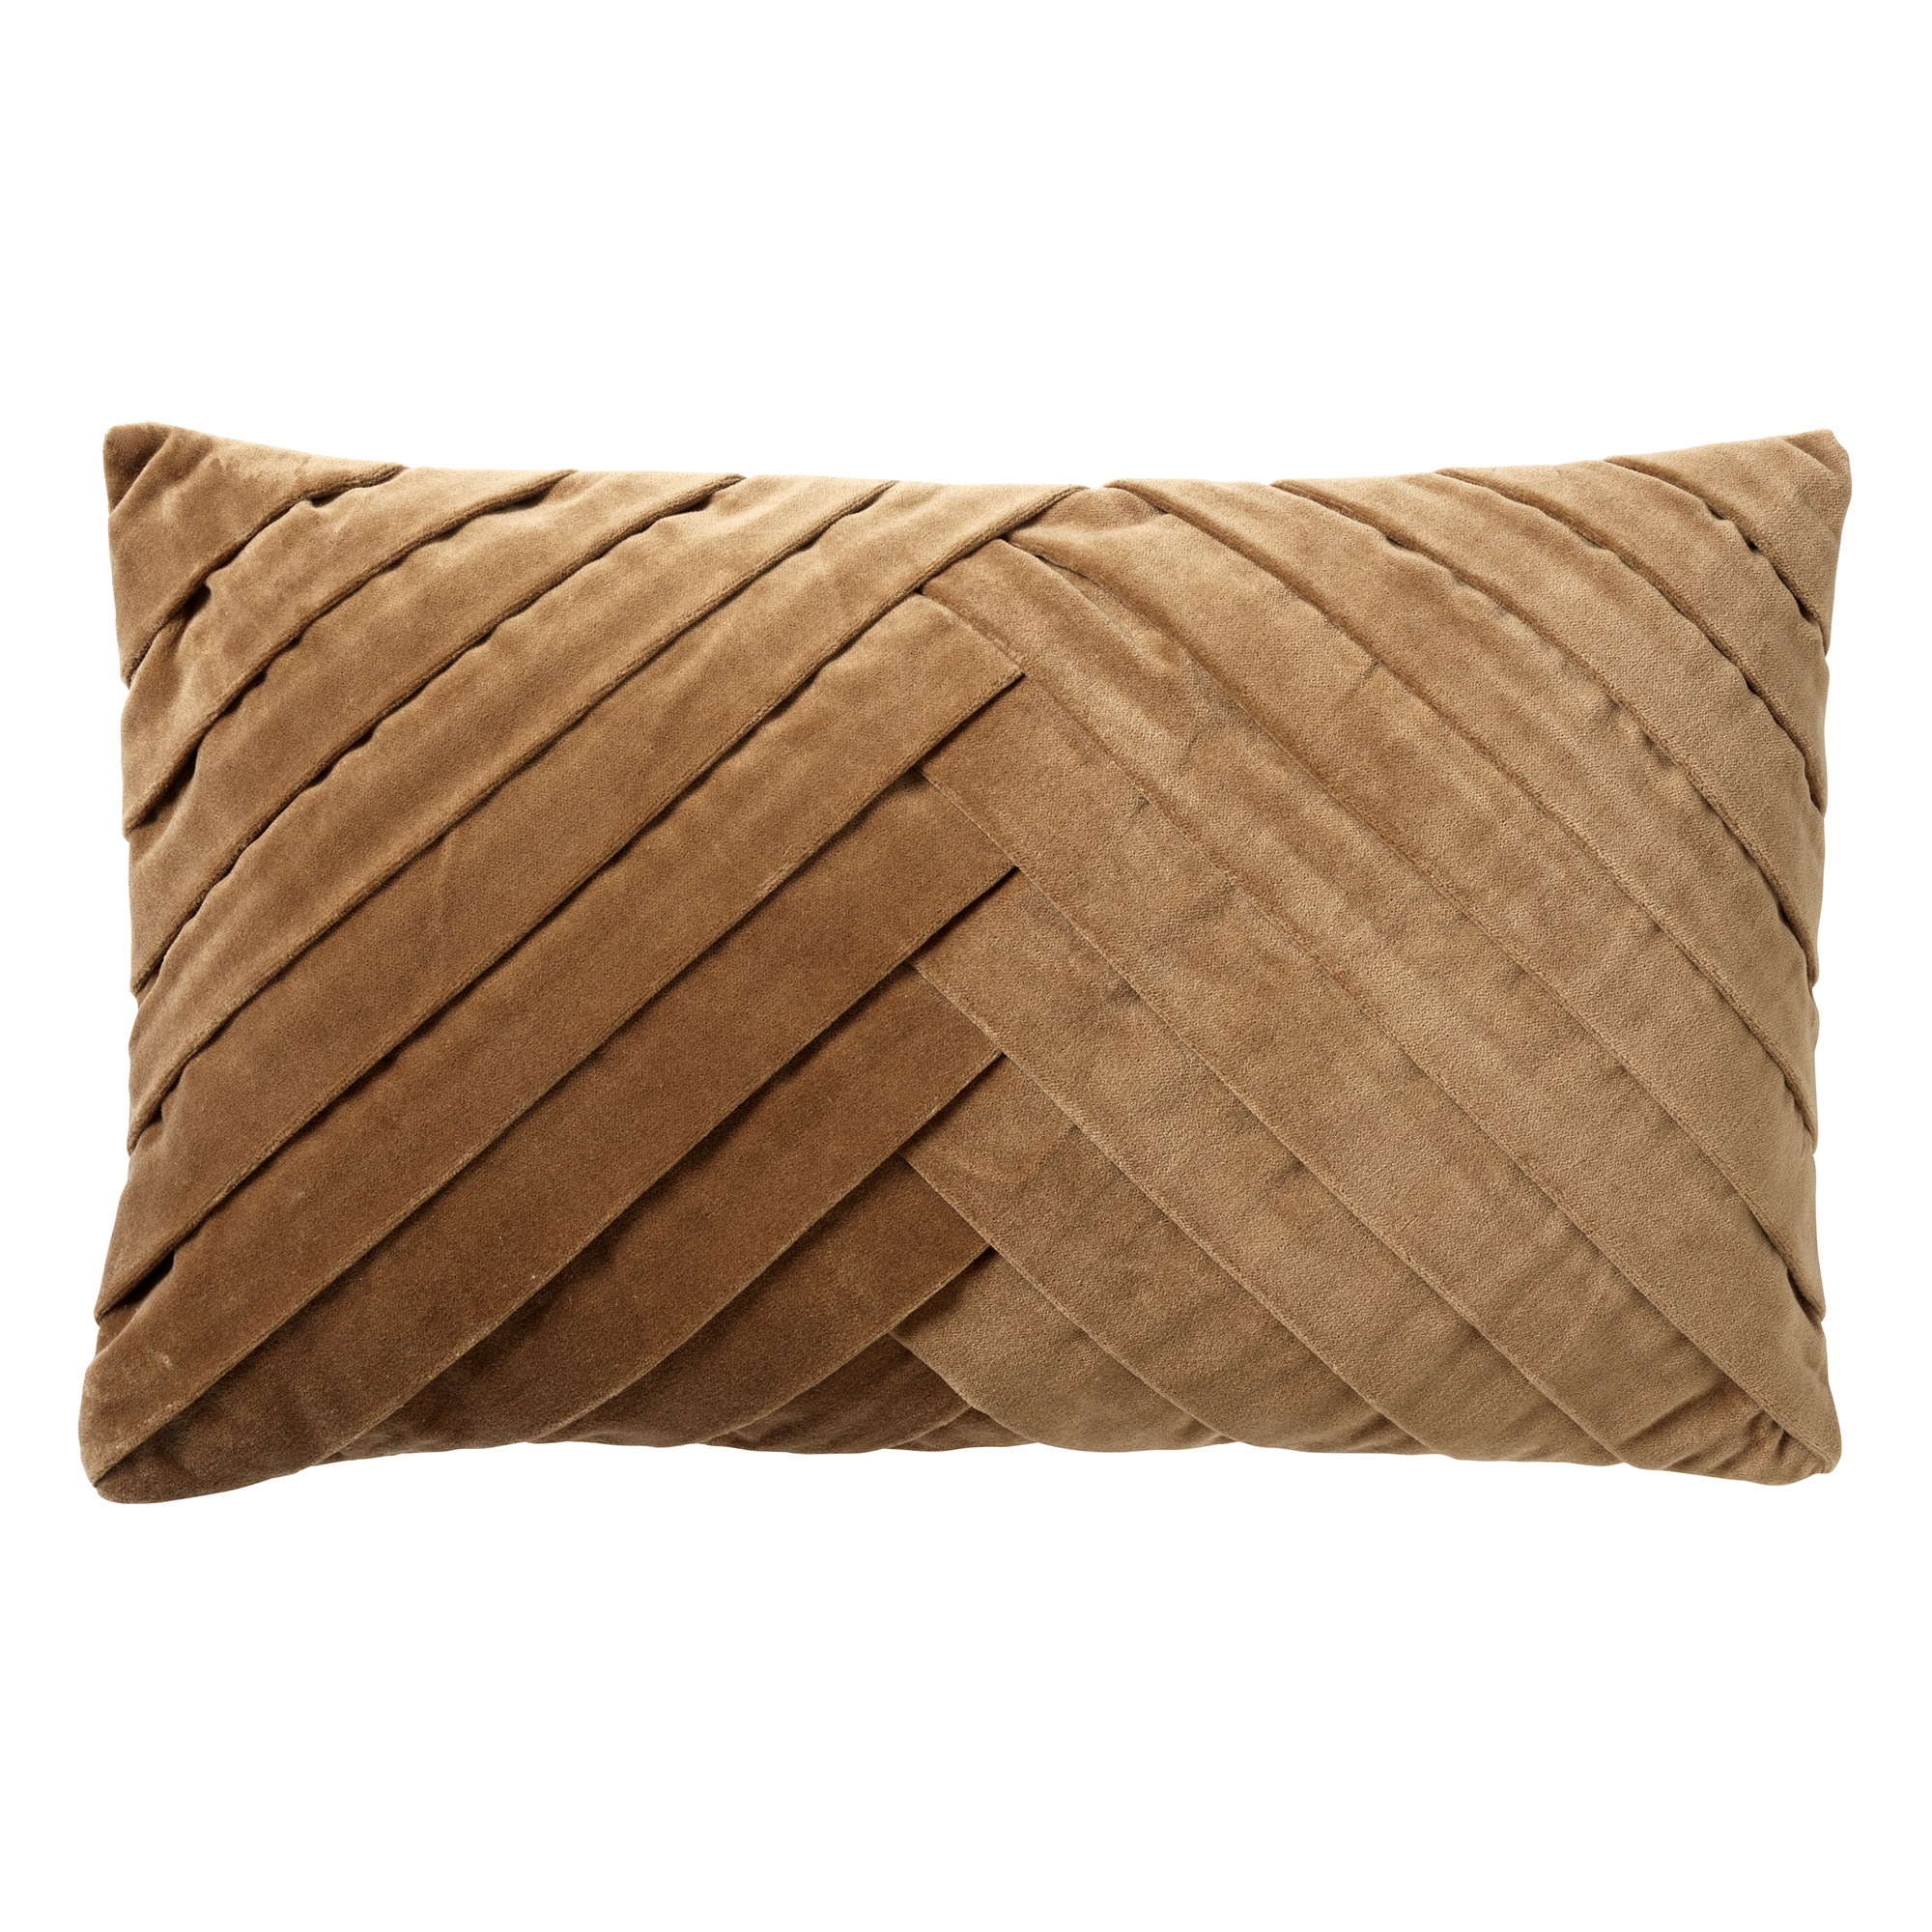 FEMM - Cushion 30x50 cm Tobacco Brown - brown